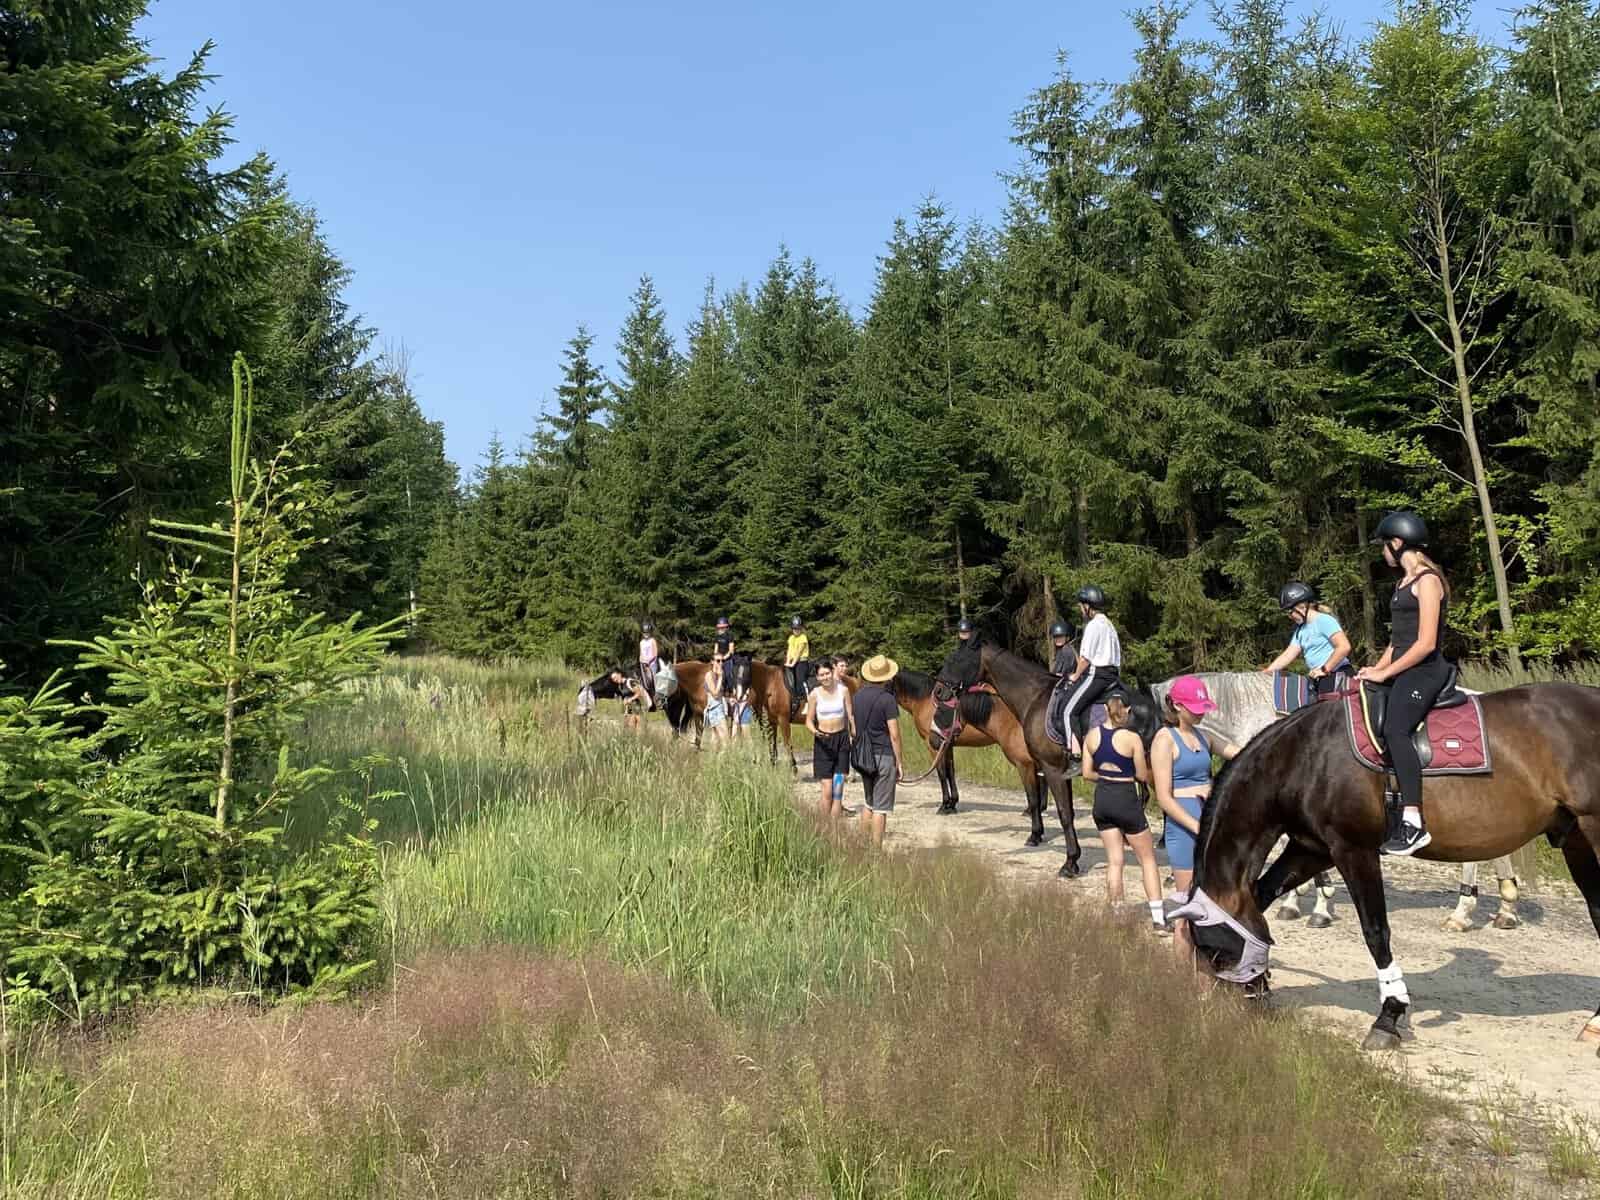 Letní tábory u koní jsou stále oblíbené. A Vysočina nabízí pro prázdniny v sedle skvělé podmínky. Většina táborů není jen o projížďkách. Děti se učí také péči o koně a správnému […]